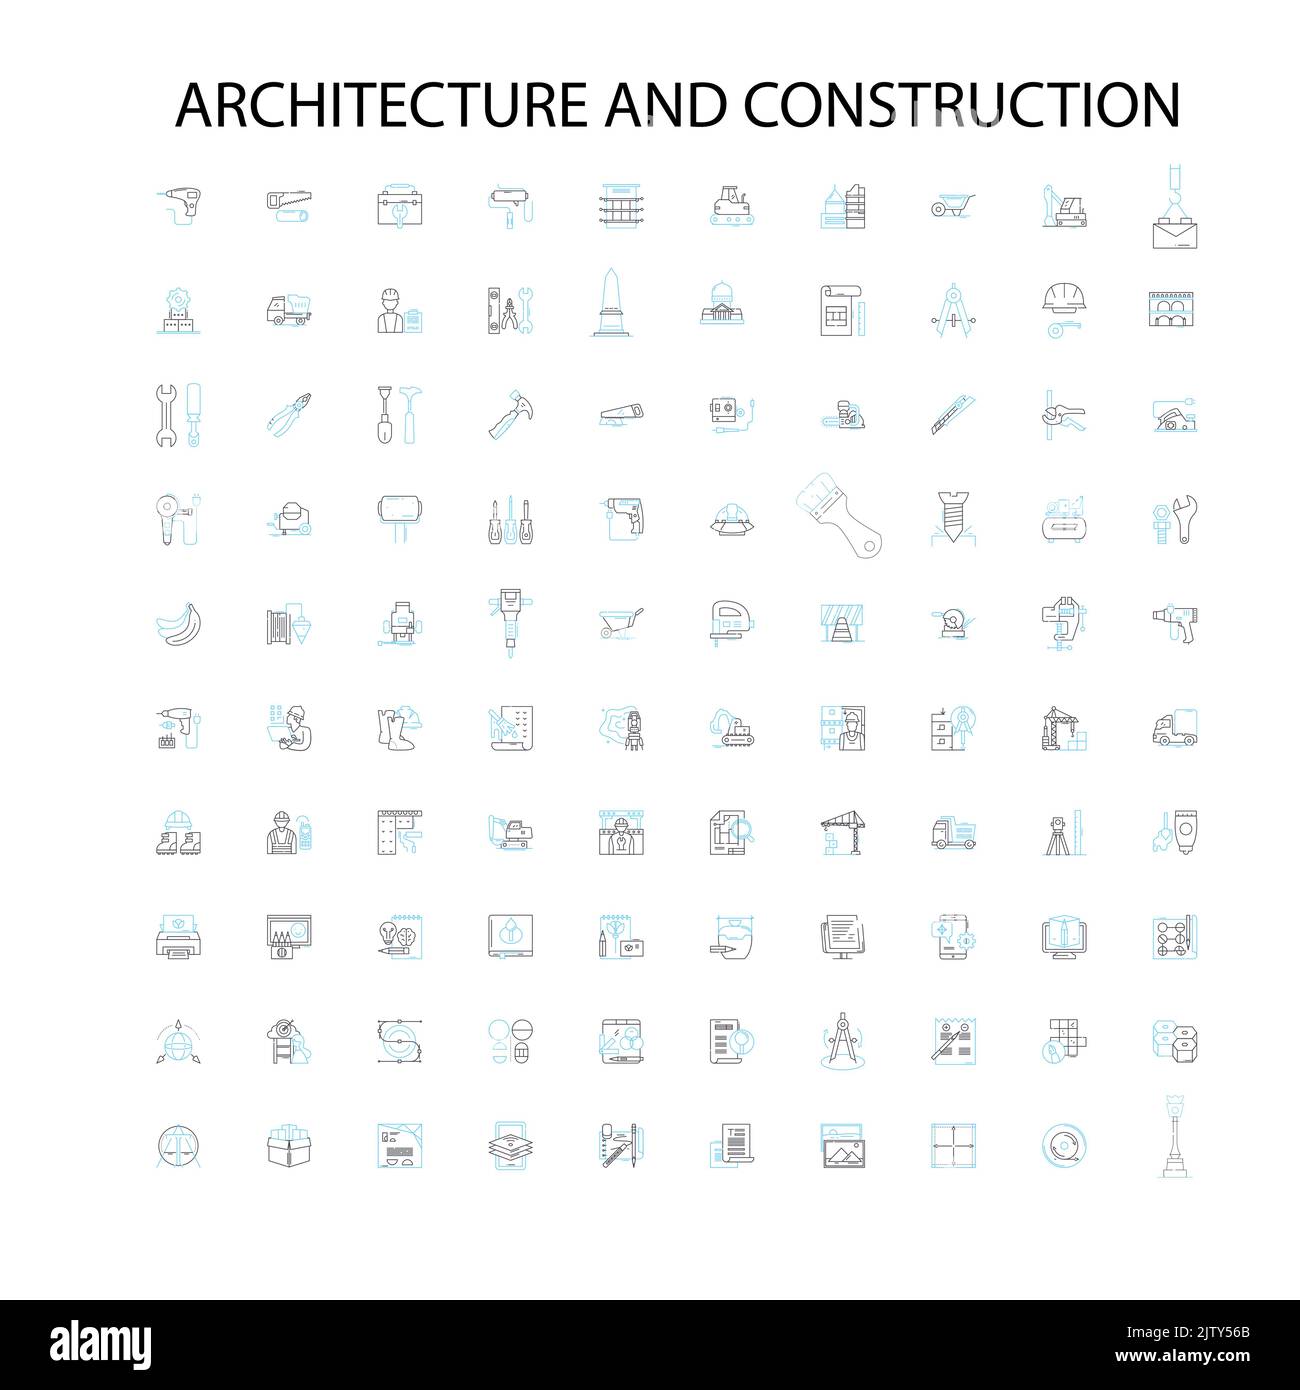 Architektur und Konstruktion Ikonen, Schilder, Umrisssymbole, Konzept lineare Illustration Linie Sammlung Stock Vektor